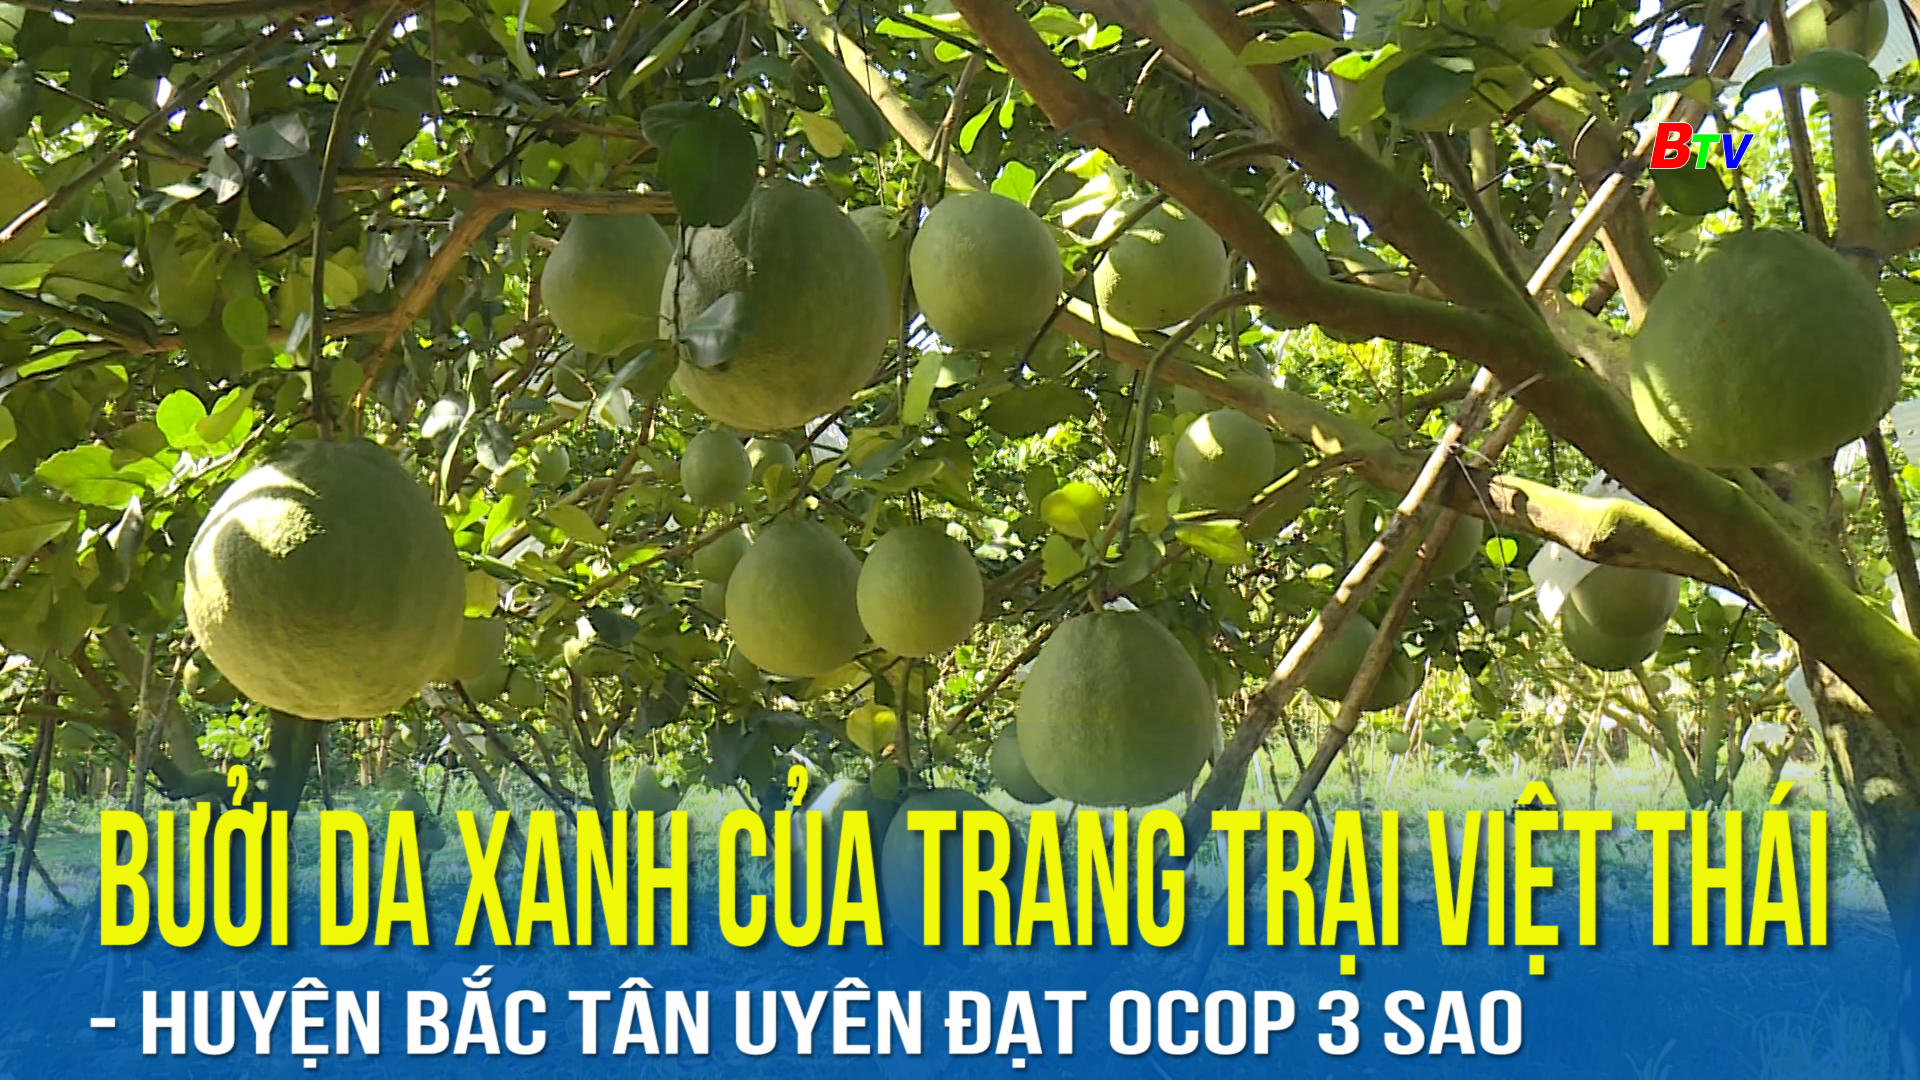 Bưởi da xanh của trang trại Việt Thái huyện Bắc Tân Uyên đạt OCOP 3 Sao